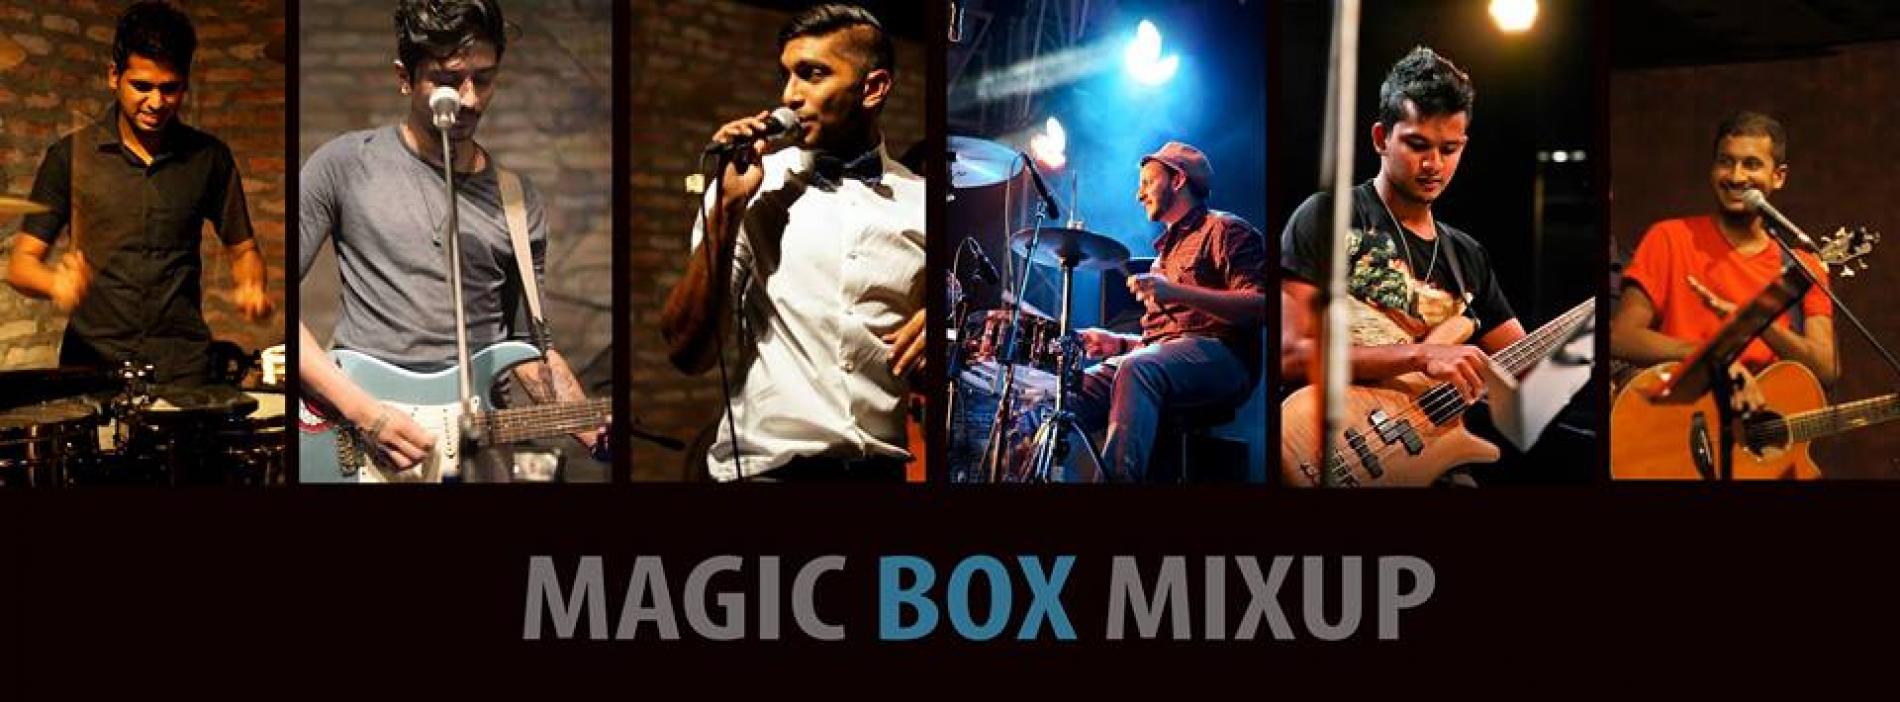 Magic Box Mixup @ Qbaa